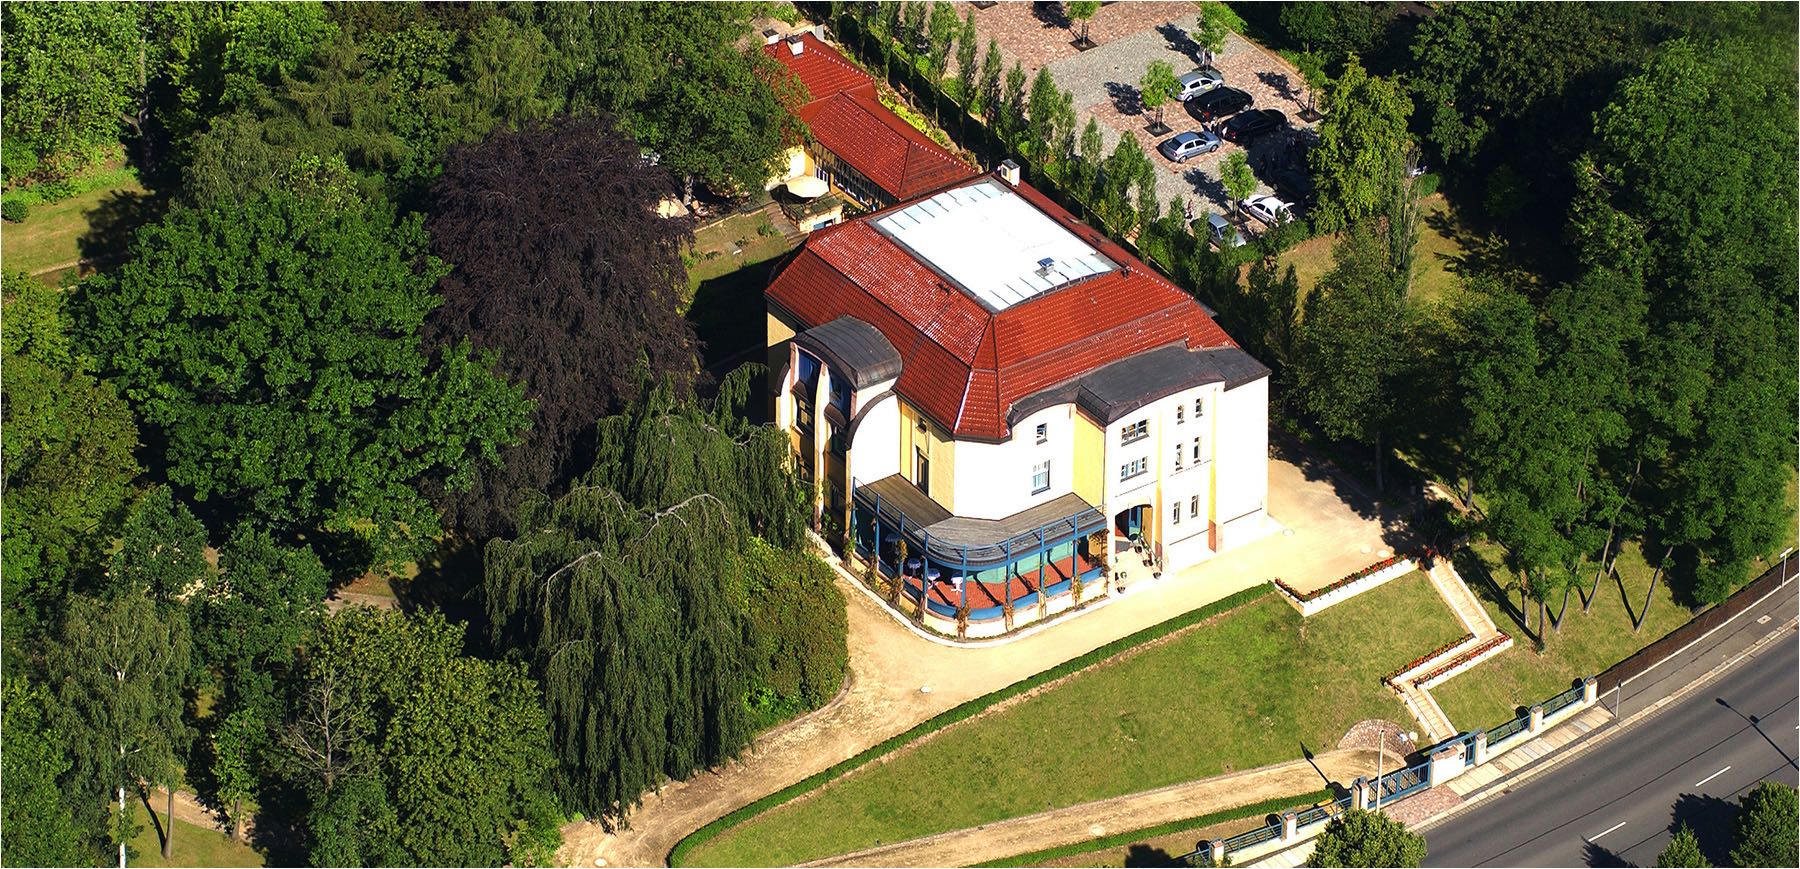  Luftbildfotografie. Die Villa Esche mit Restaurant, malerisch gelegen inmitten von Grün in der Innenstadt von Chemnitz aus der Luft betrachtet. Copyright by Fotostudio Jörg Riethausen 